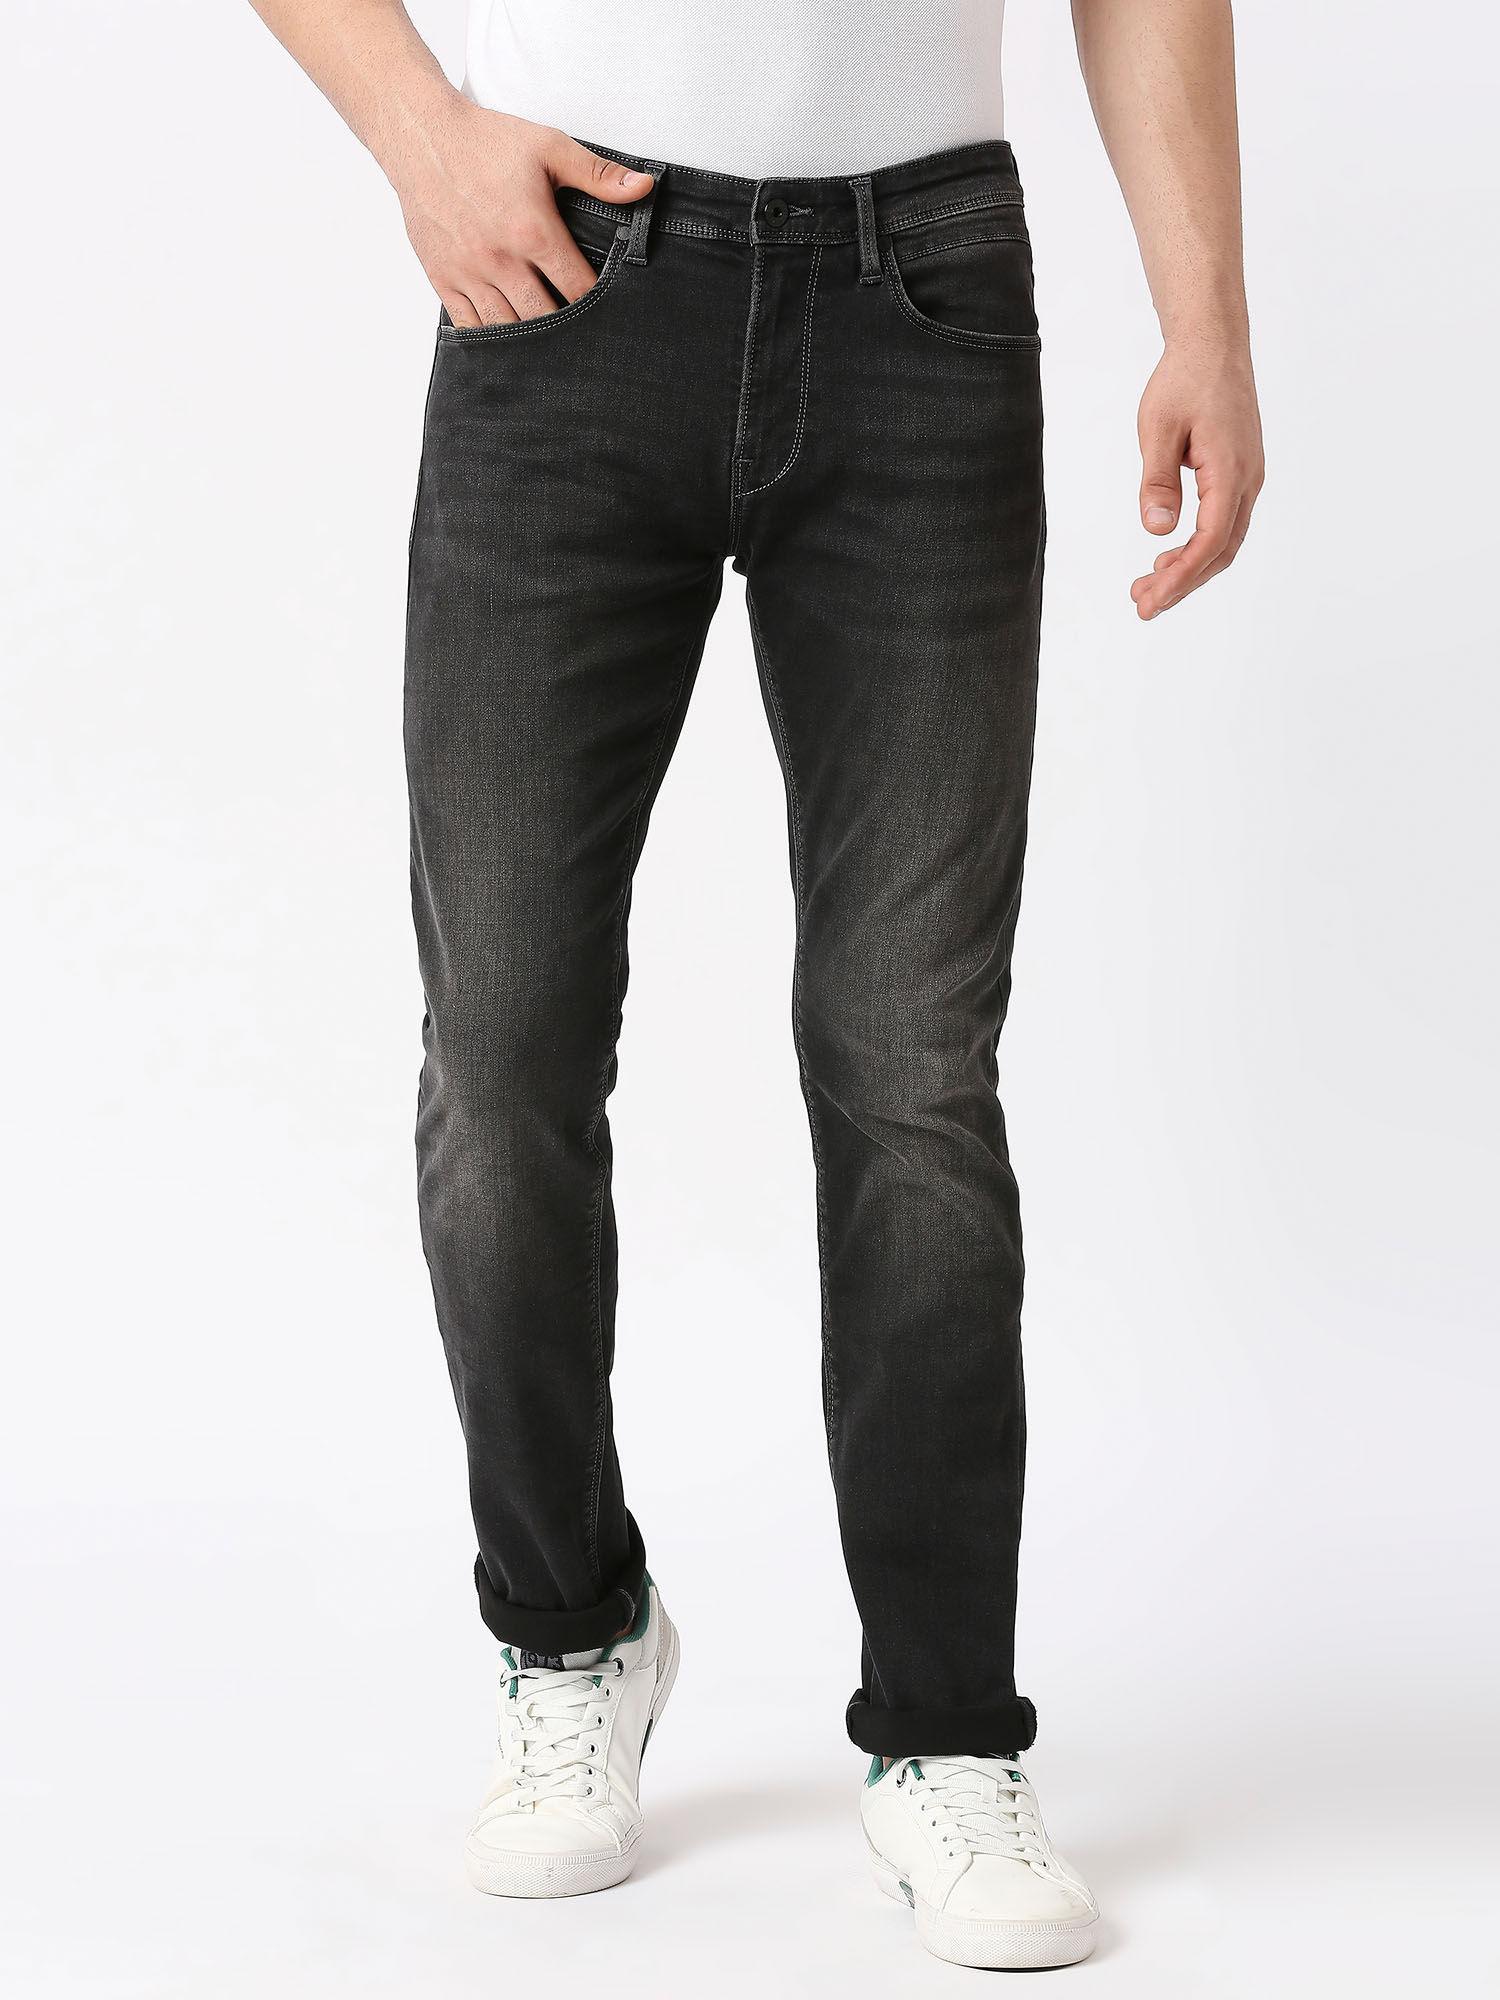 black vapour slim fit mid waist jeans